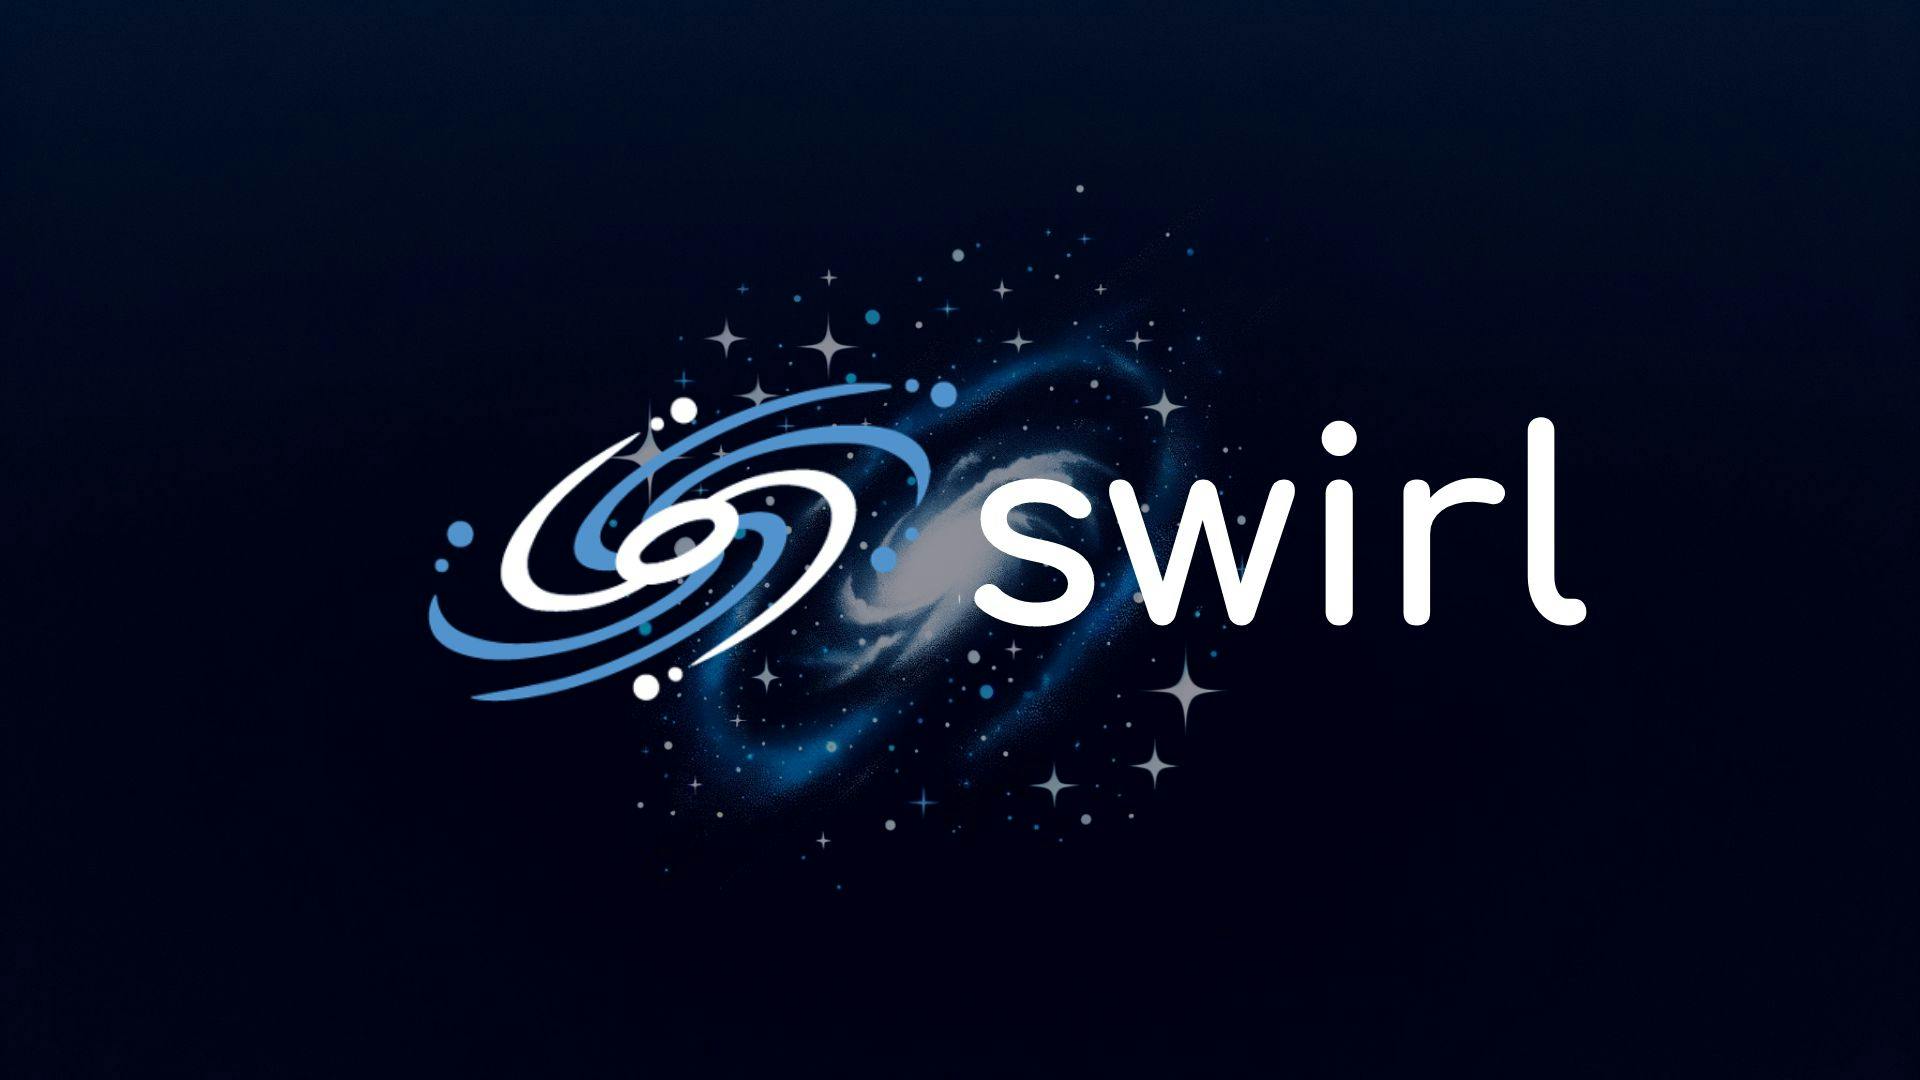 Swirl 2.6 Released